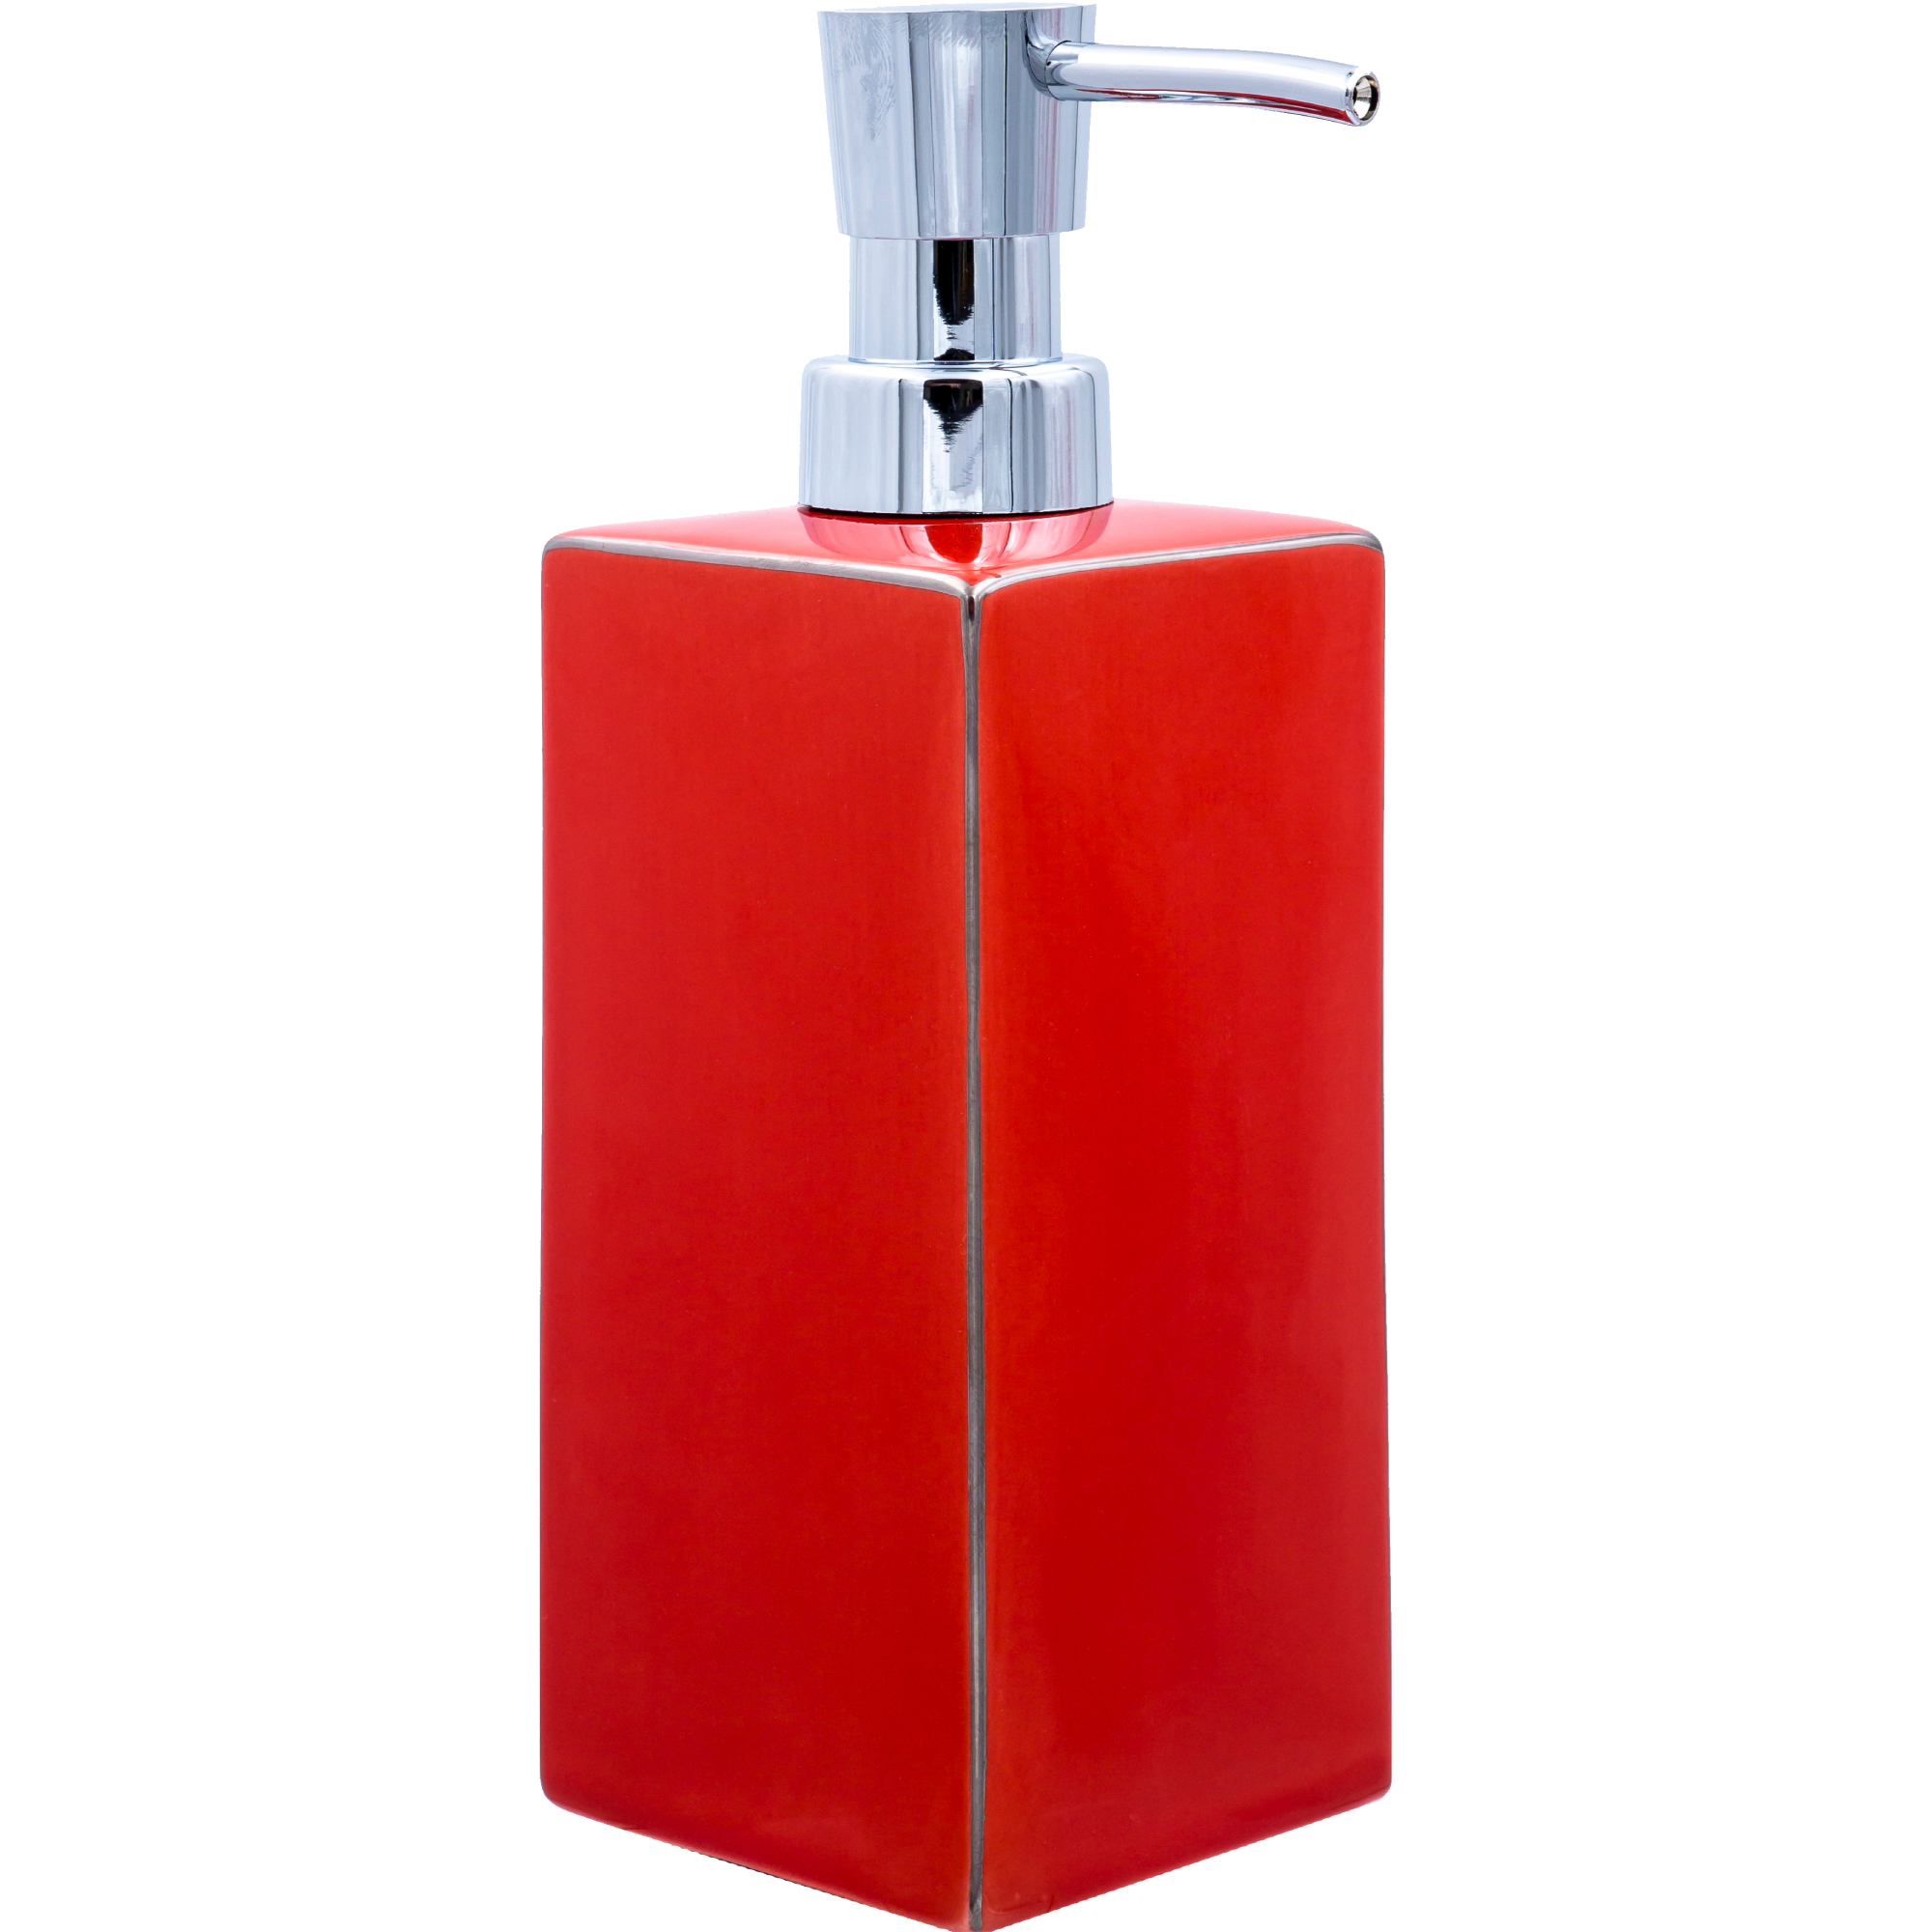 Дозатор для жидкого мыла Ridder Chichi красный 9х6,5х19,5 см дозатор для жидкого мыла fixsen cuba fx 503 1 красный